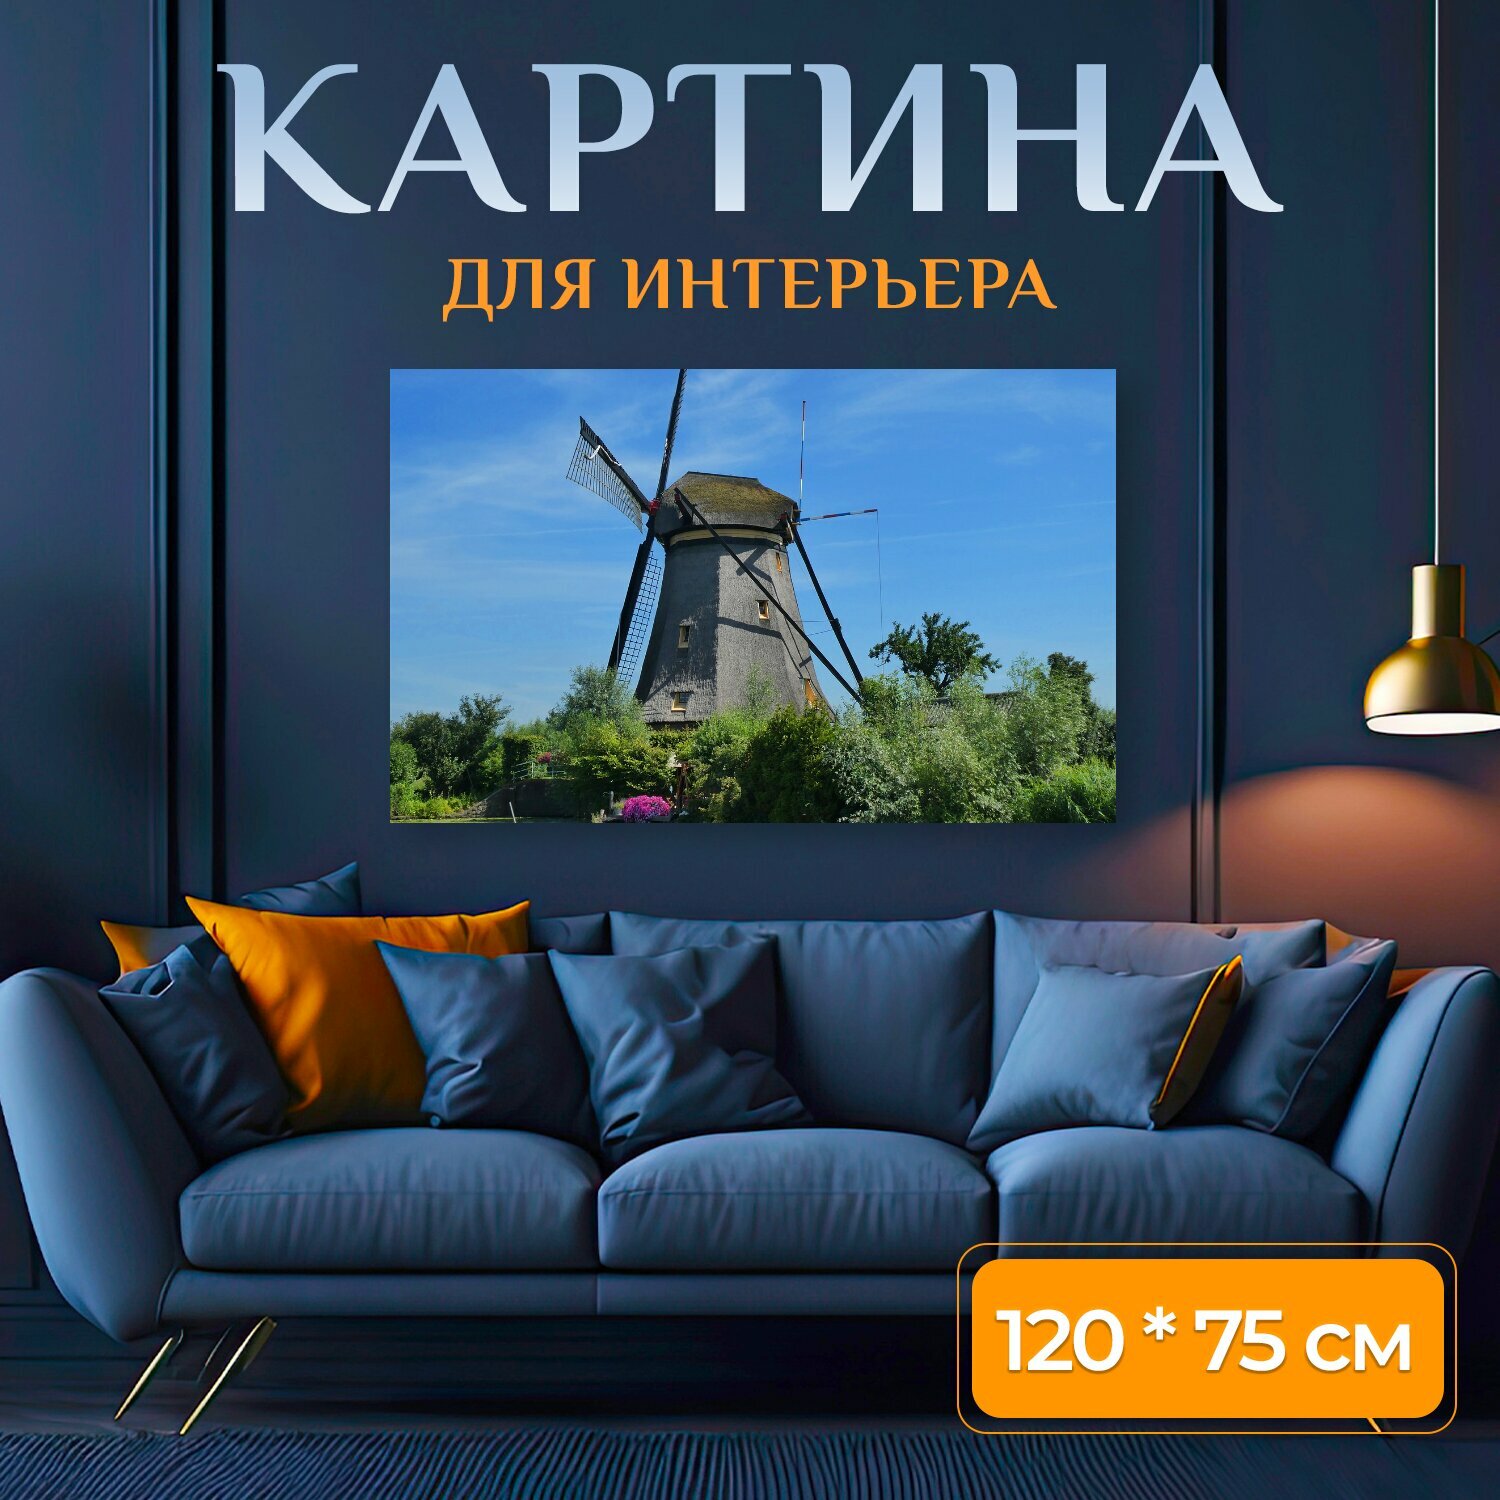 Картина на холсте "Ветряная мельница в киндердейк, нидерланды, всемирного наследия юнеско" на подрамнике 120х75 см. для интерьера